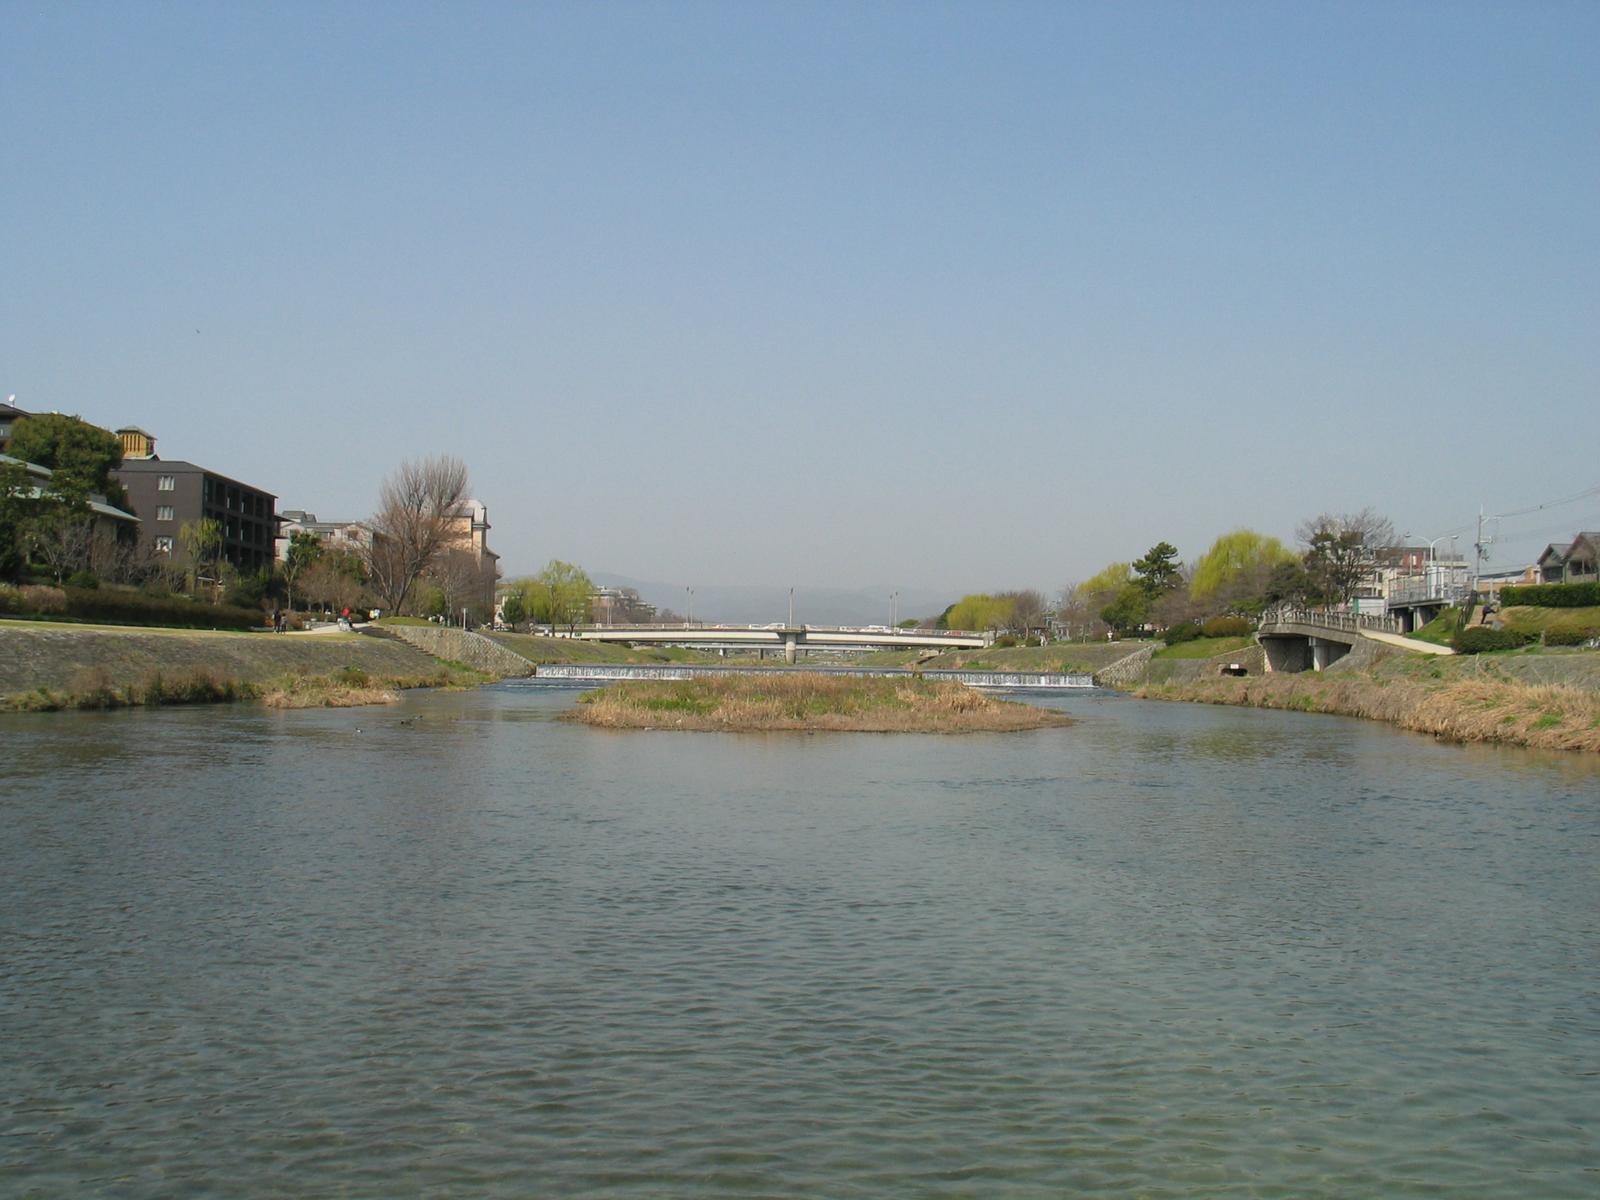 The Kamo River